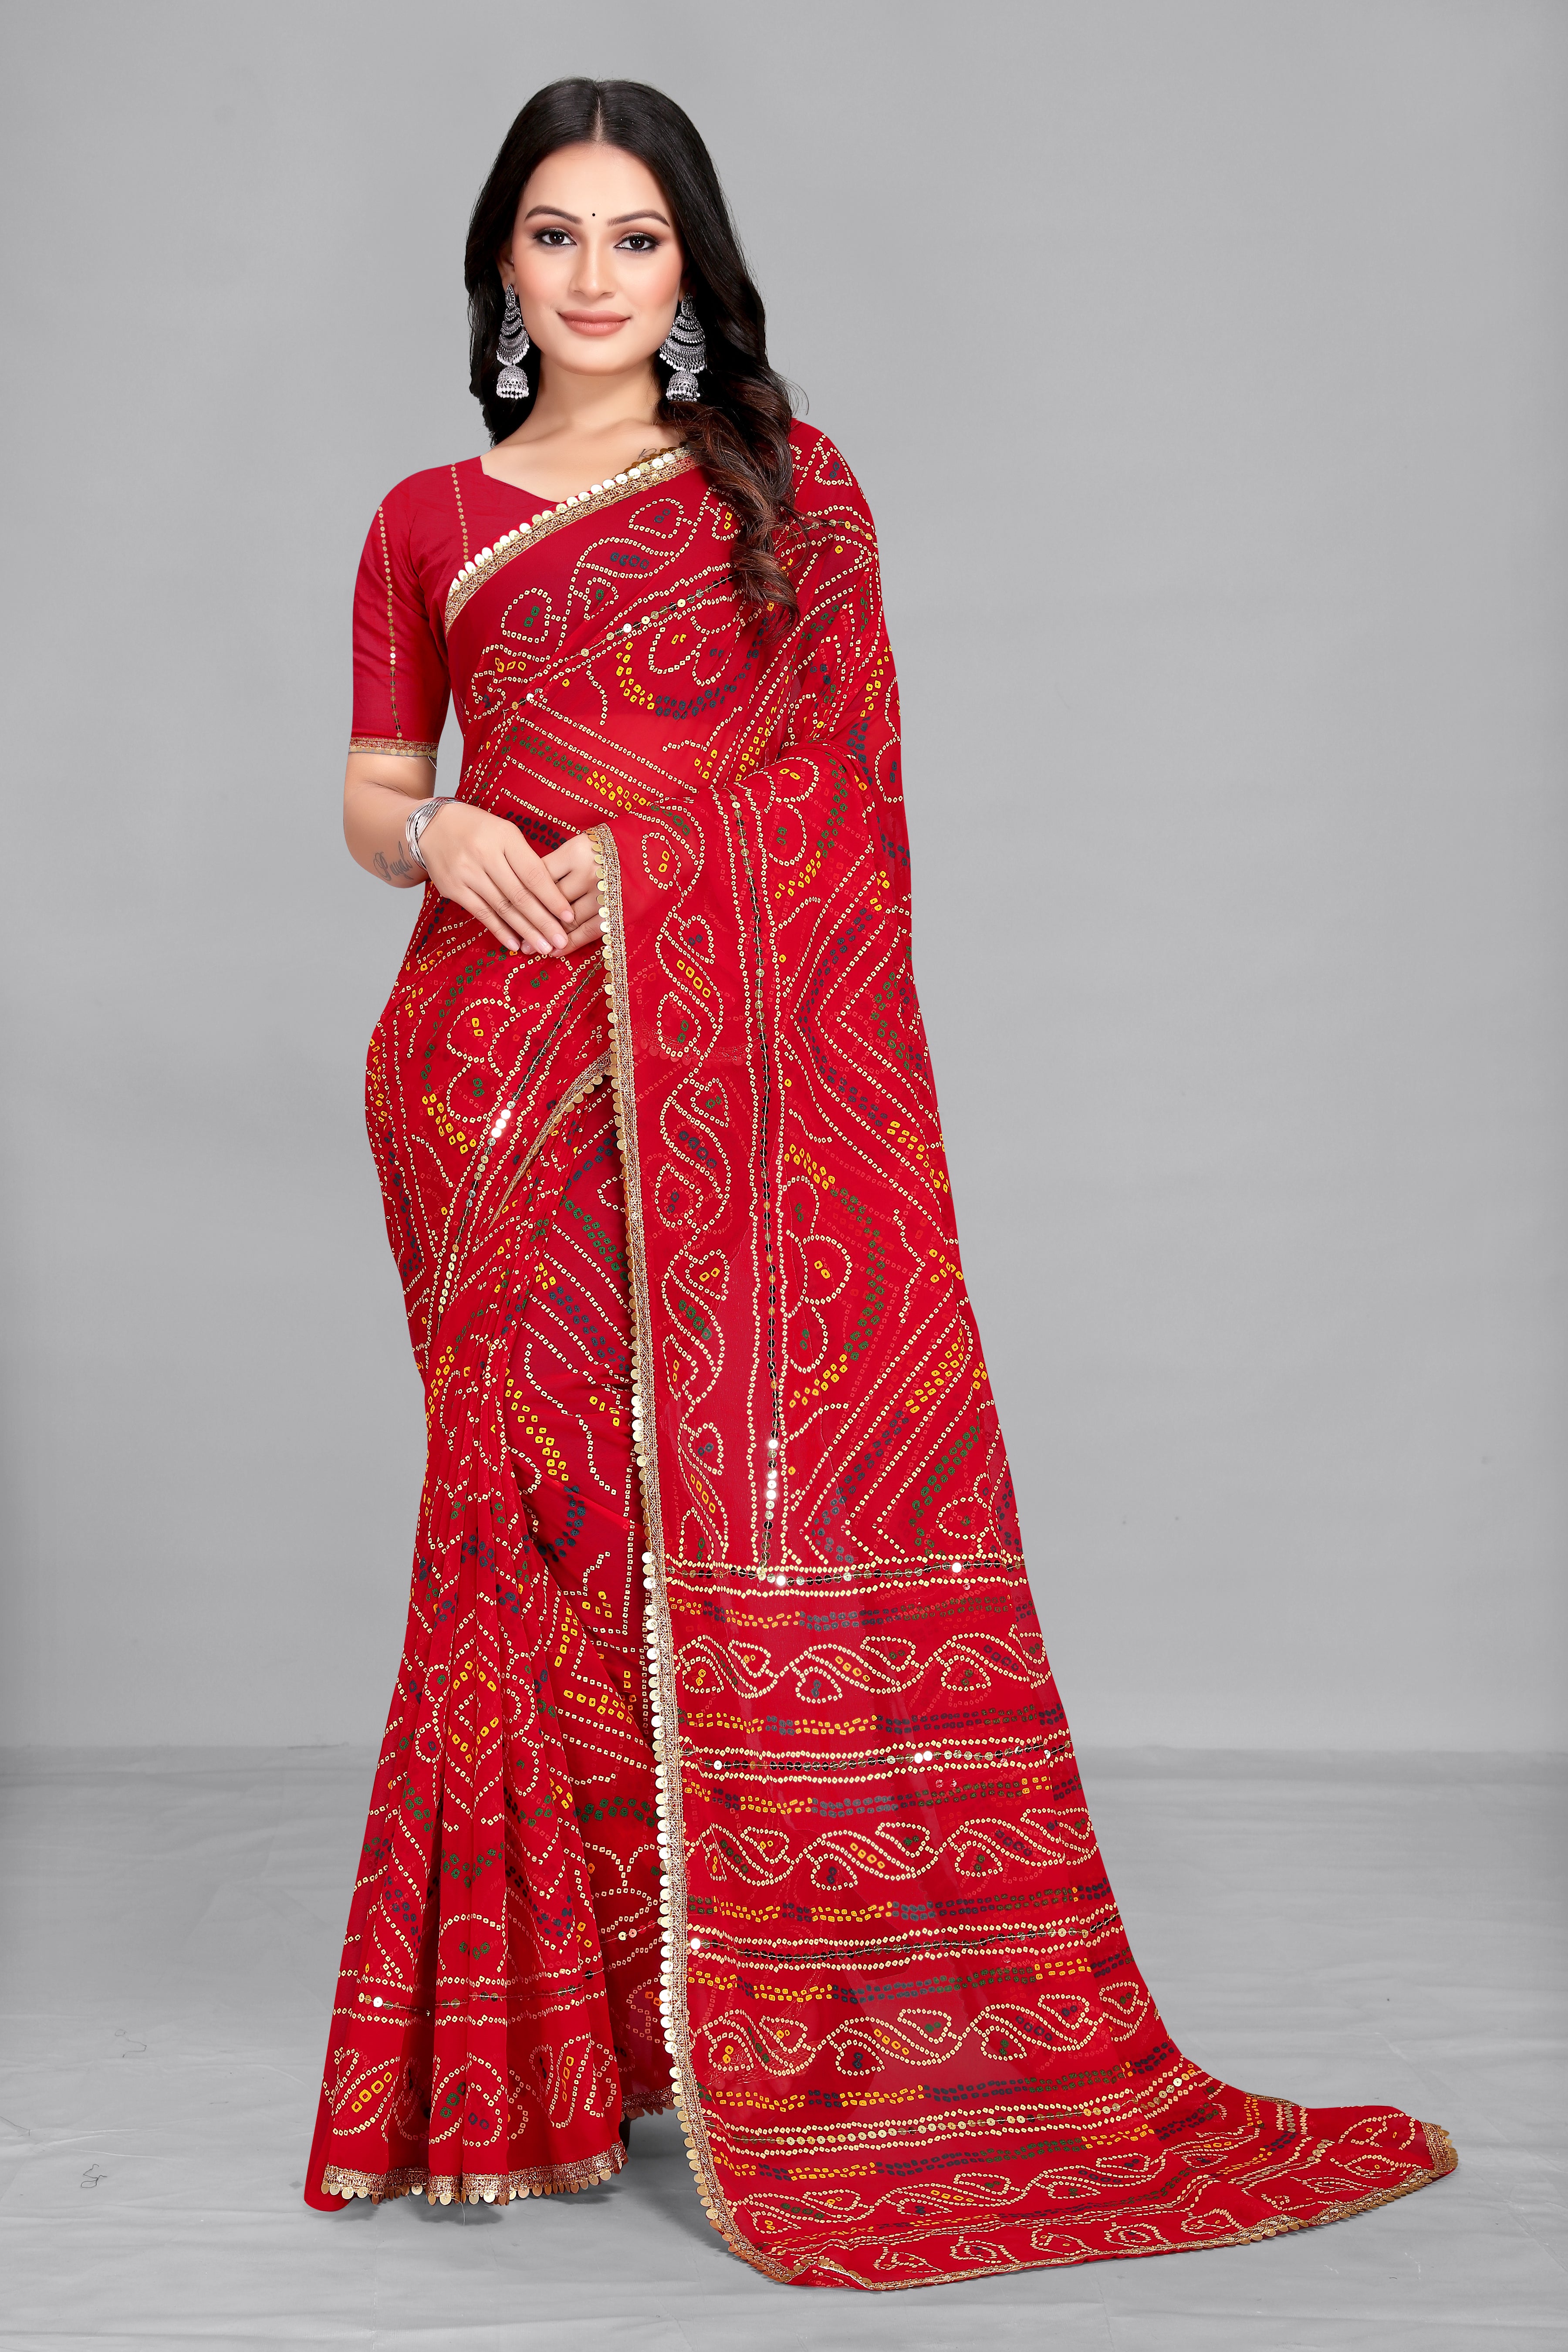 Women's Bandhani Printed Red Georgette Saree - Dwija Fashion